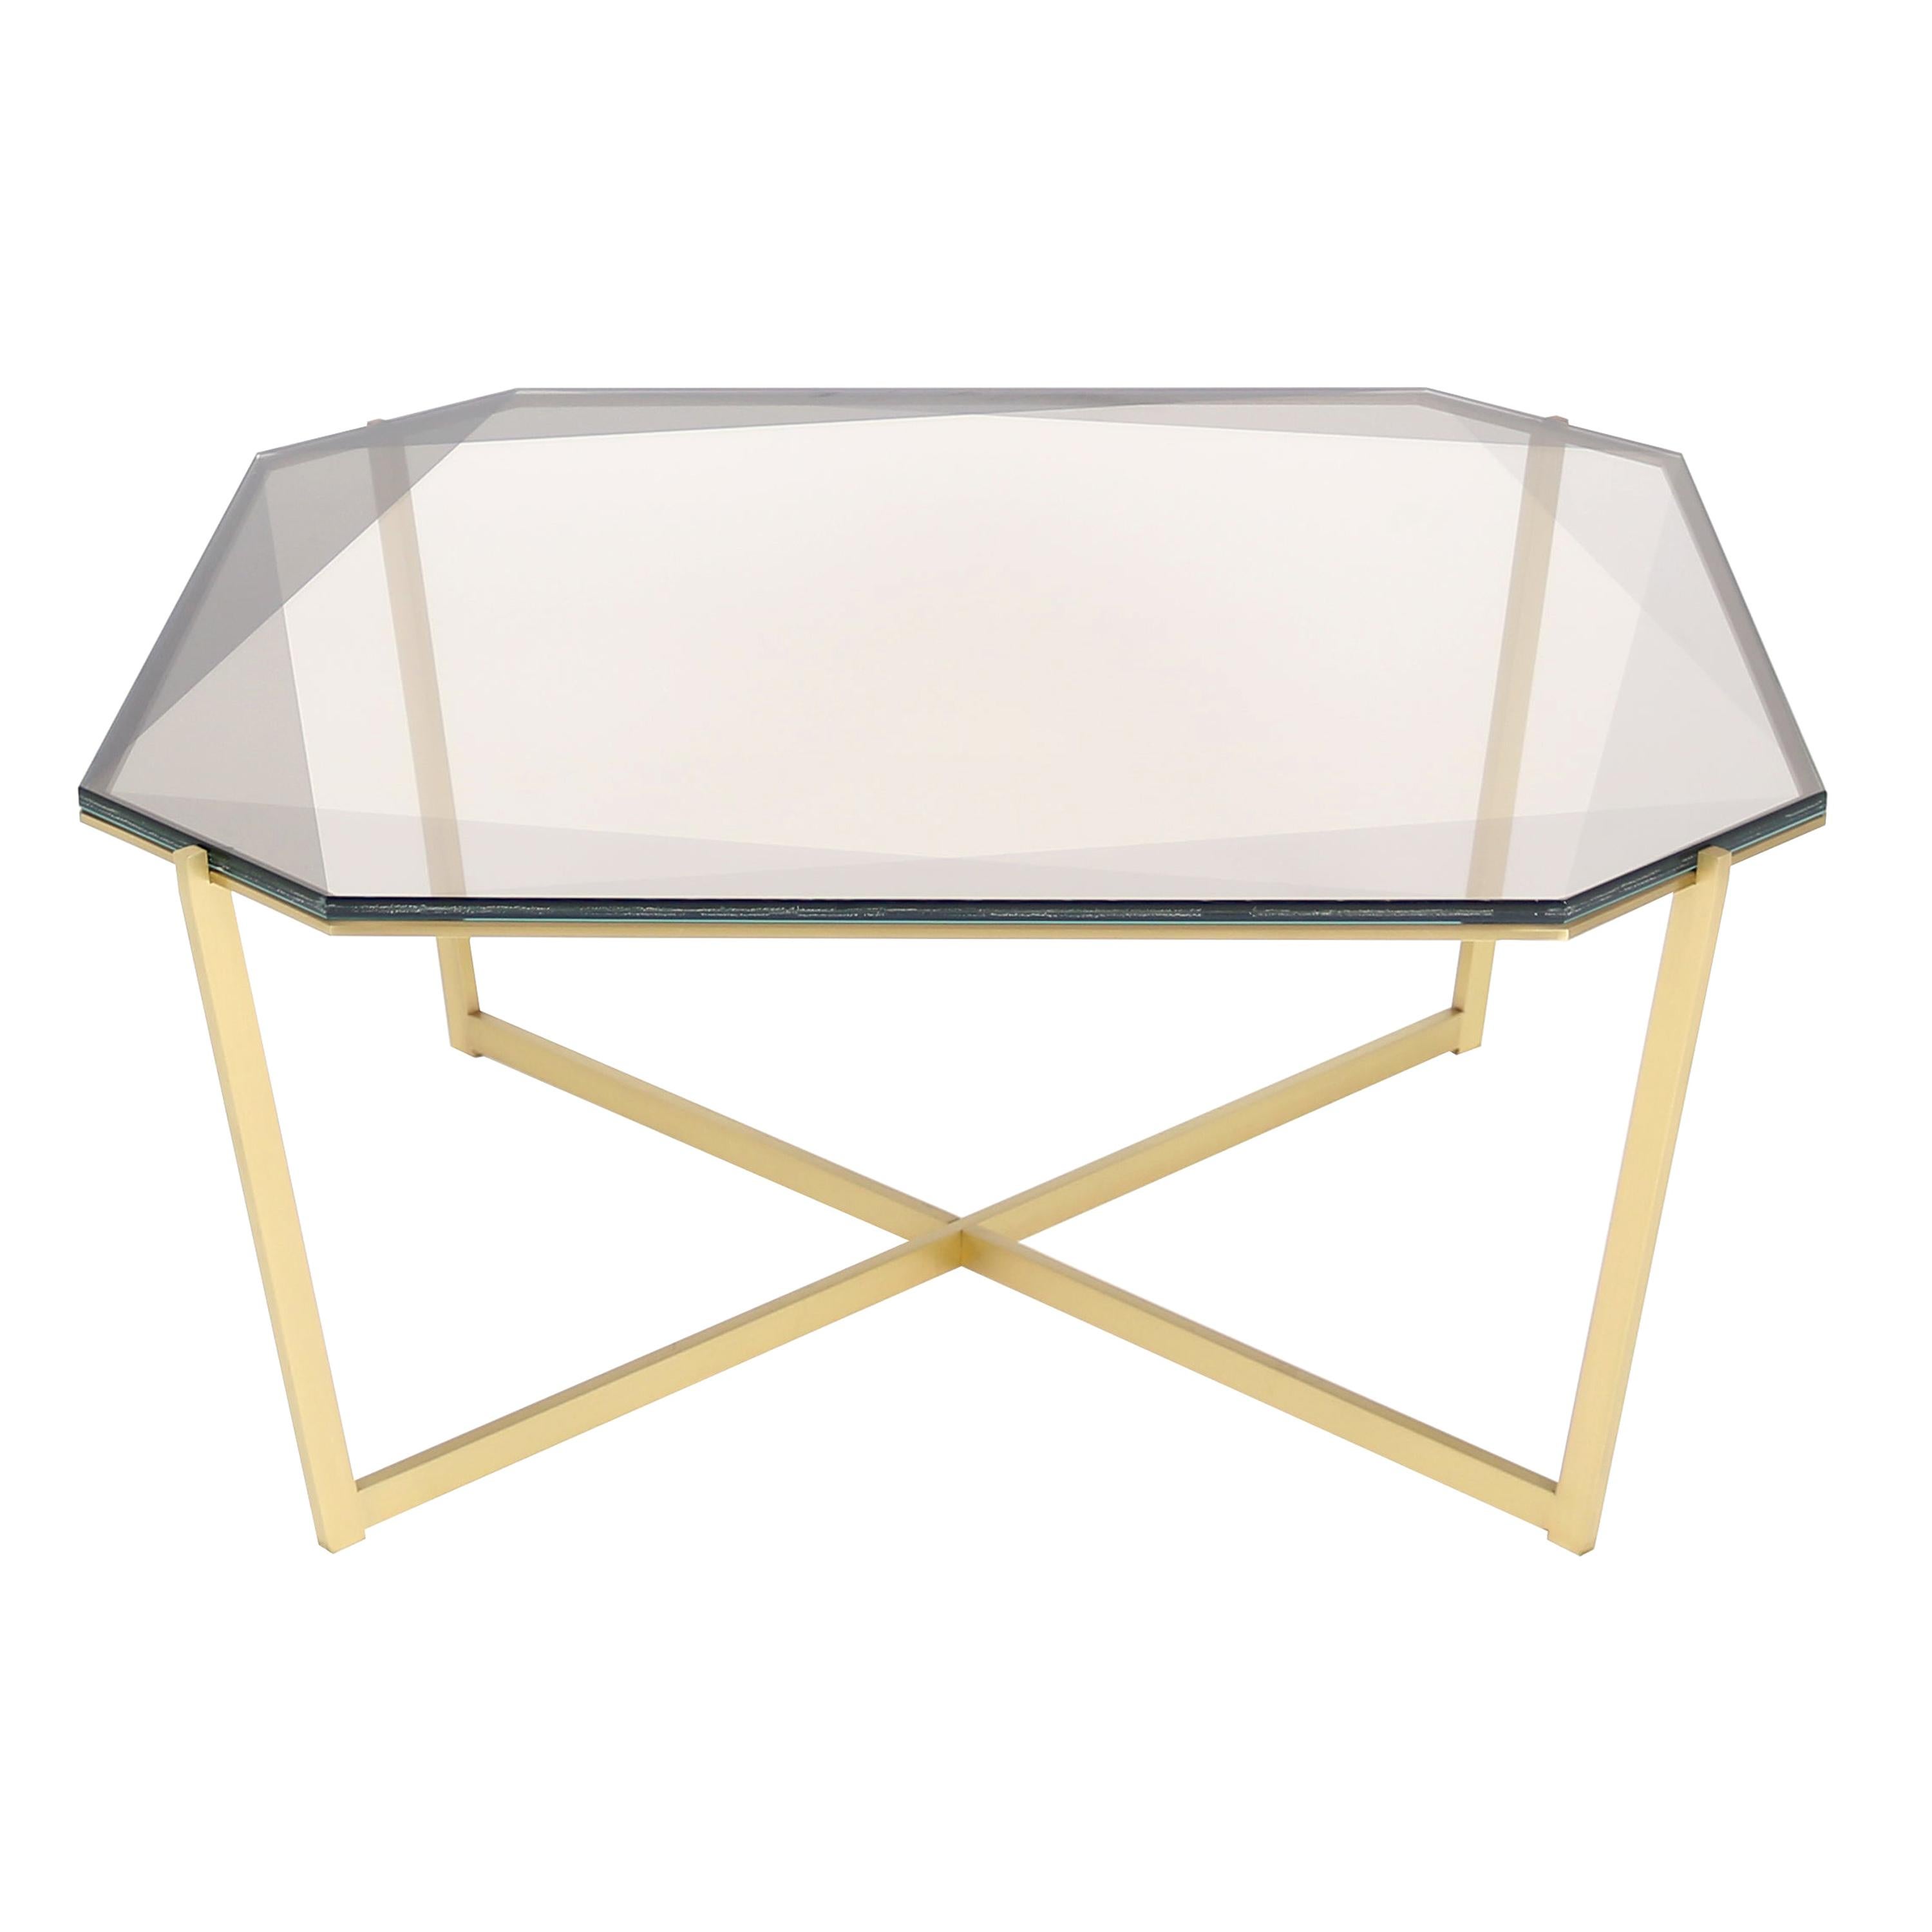 Gem Square Coffee Table-Smoke Glass with Brass Base by Debra Folz